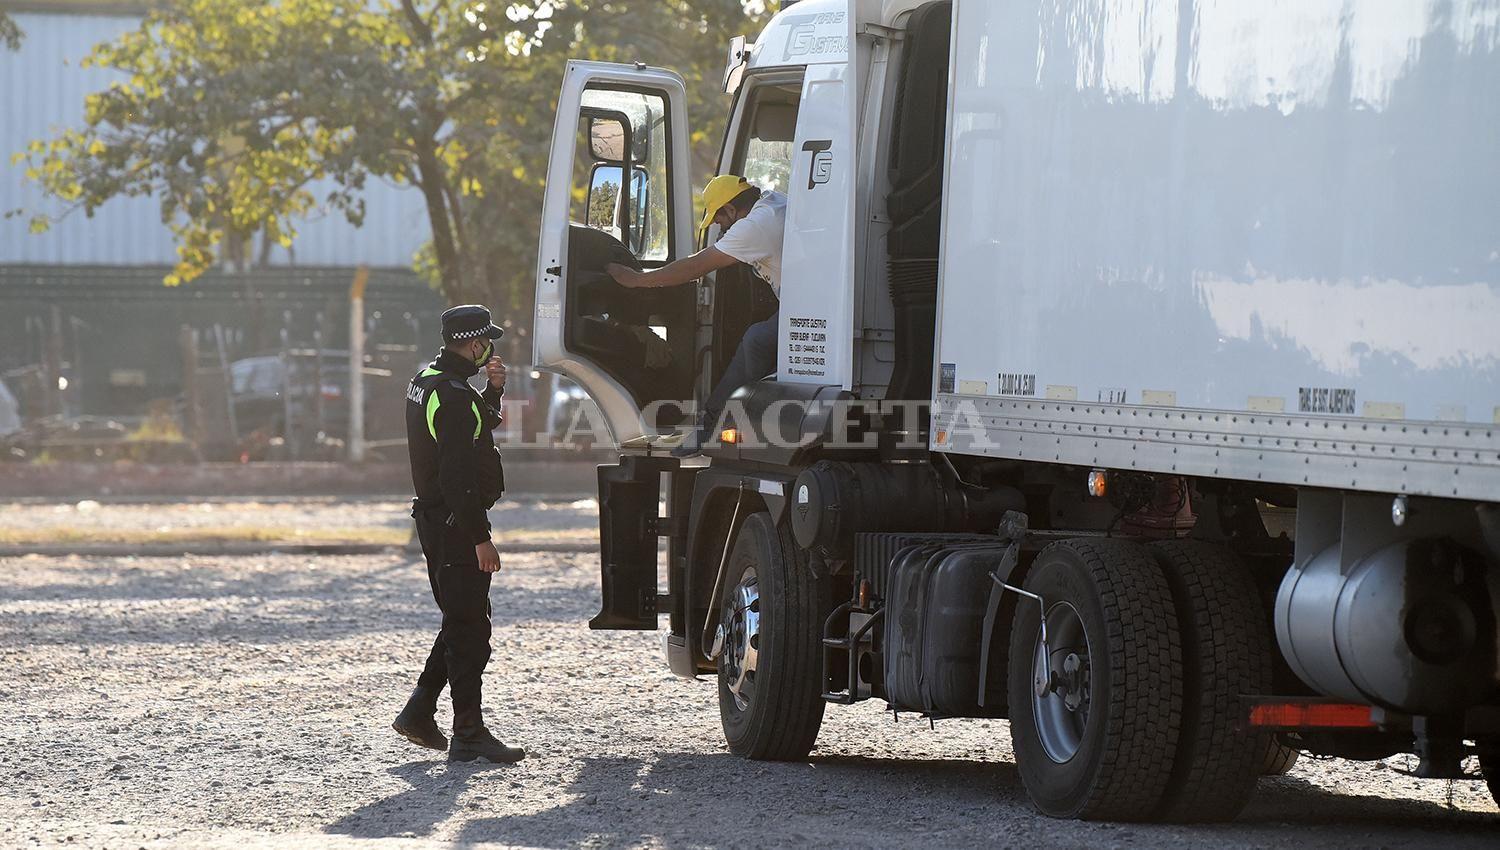 El gobierno catamarqueño cerró temporalmente el frigorífico para el que trabajaban los camioneros contagiados